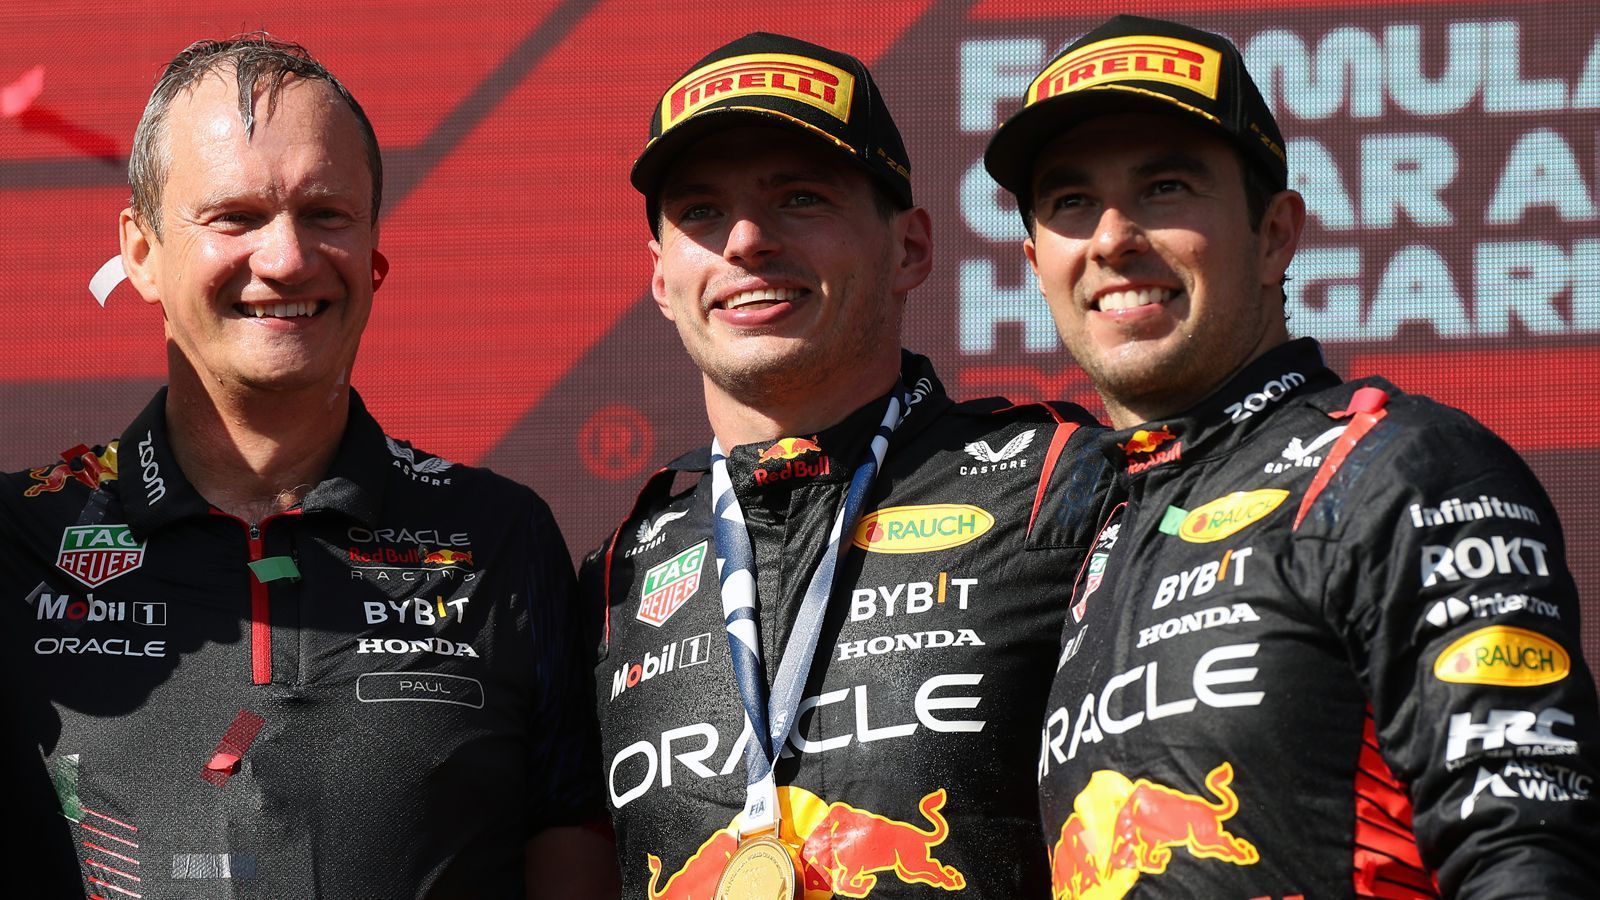 
                <strong>Gewinner: Red Bull Racing</strong><br>
                Neben Verstappen fuhr auch dessen Red-Bull-Racing-Teamkollege Sergio Perez (re.) in Budapest ein starkes Rennen und landete auf Platz drei. In der Fahrerwertung liegt der Mexikaner nun mit 156 Punkten direkt hinter Verstappen auf dem zweiten Rang. Der Sieg des Niederländers war bereits der zwölfte Red-Bull-Erfolg in Serie, womit der österreichische Rennstall einen neuen Formel-1-Rekord aufgestellt hat.
              